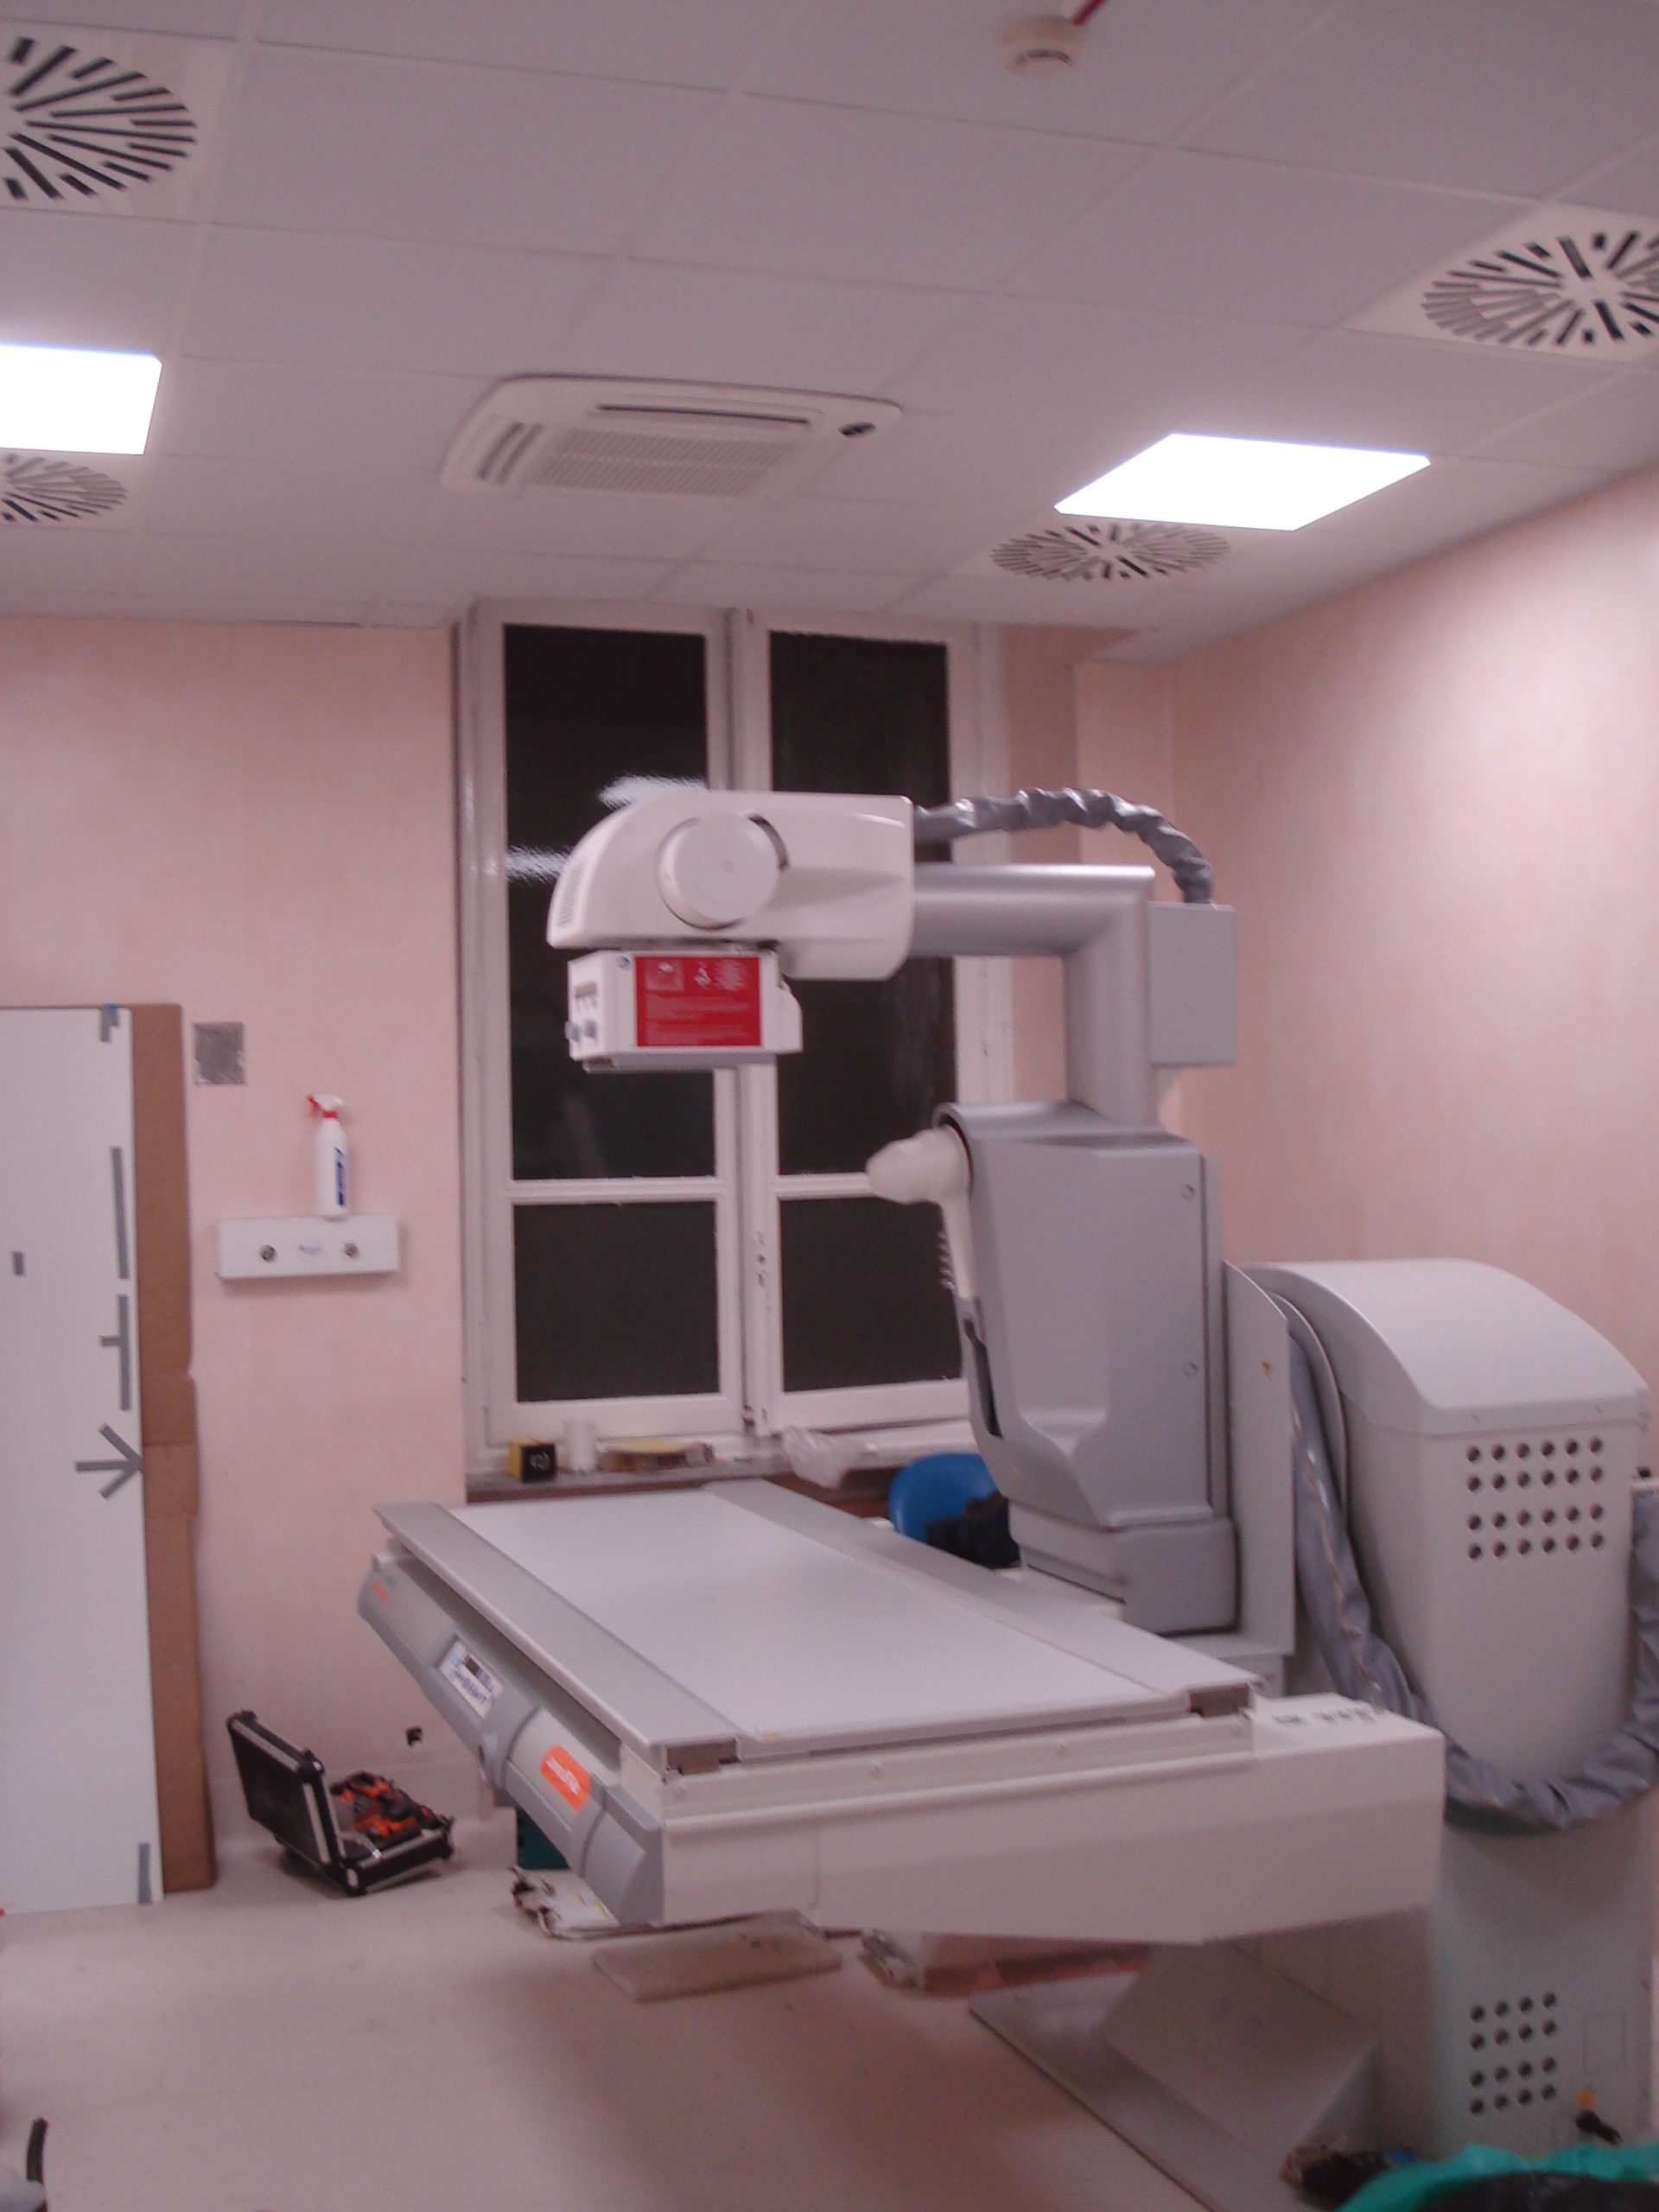 Nuova apparecchiatura radiologica ospedale Mauriziano